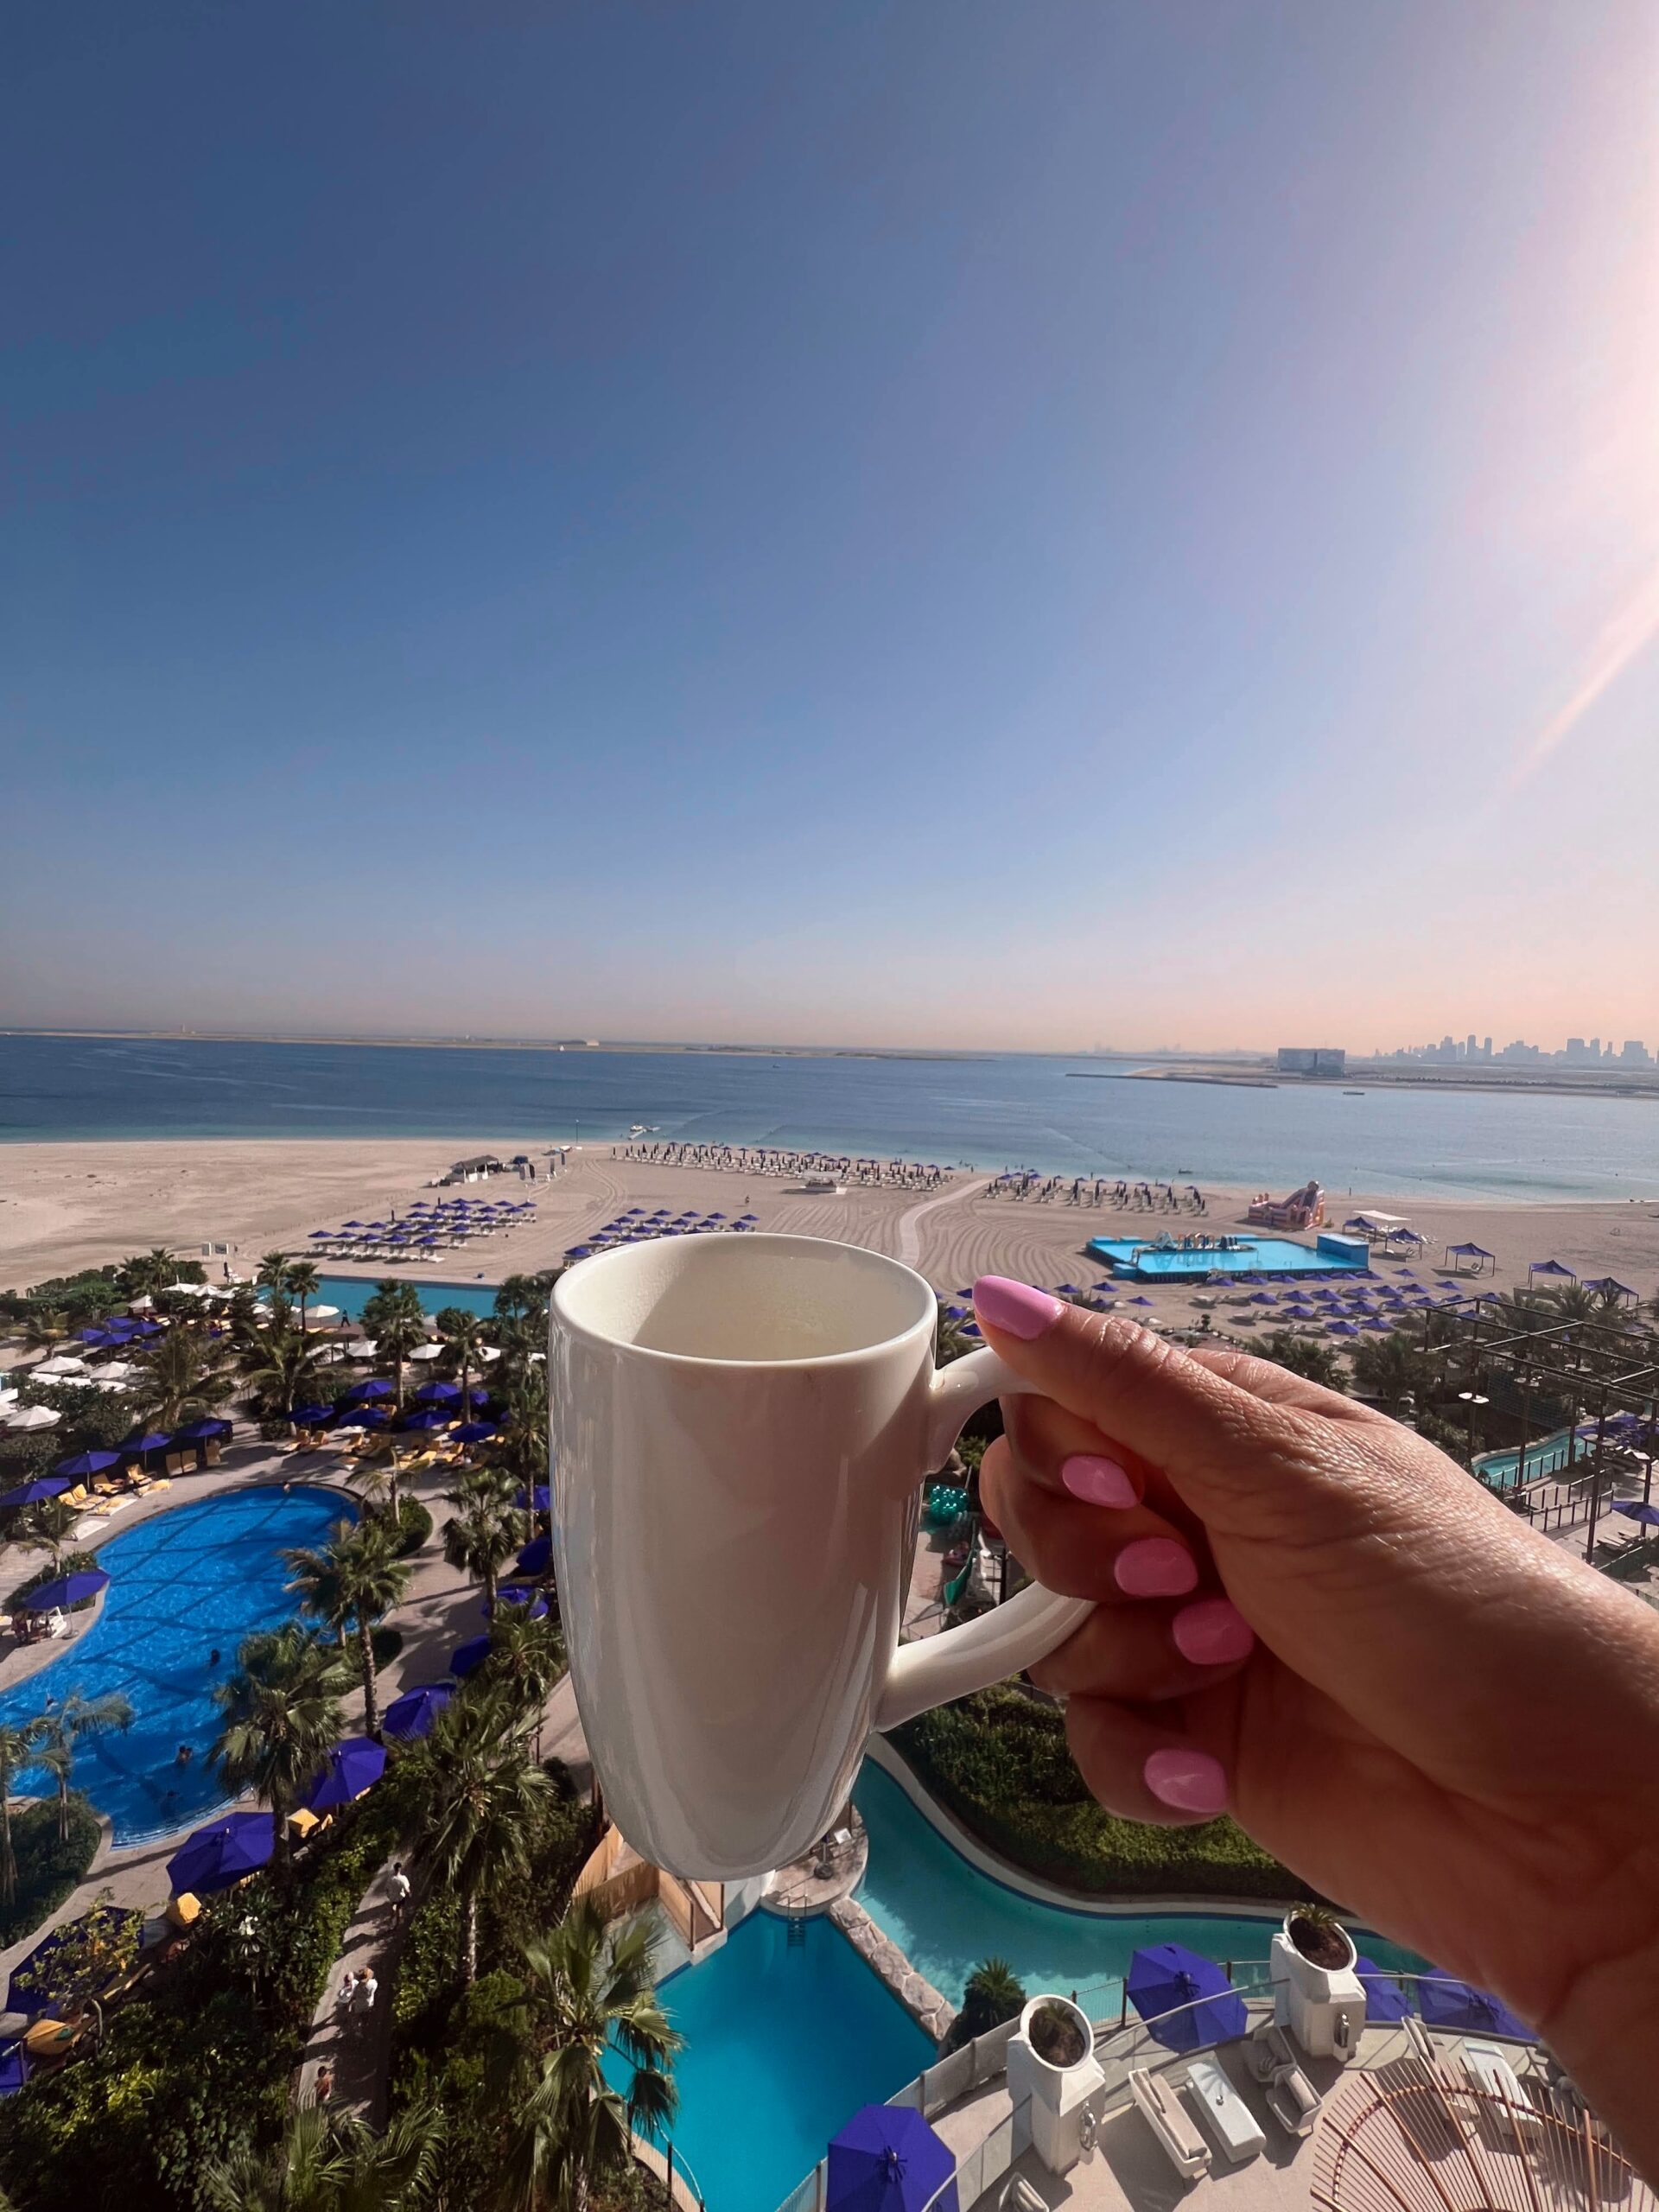 The Centara Mirage Hotel in Dubai Island.